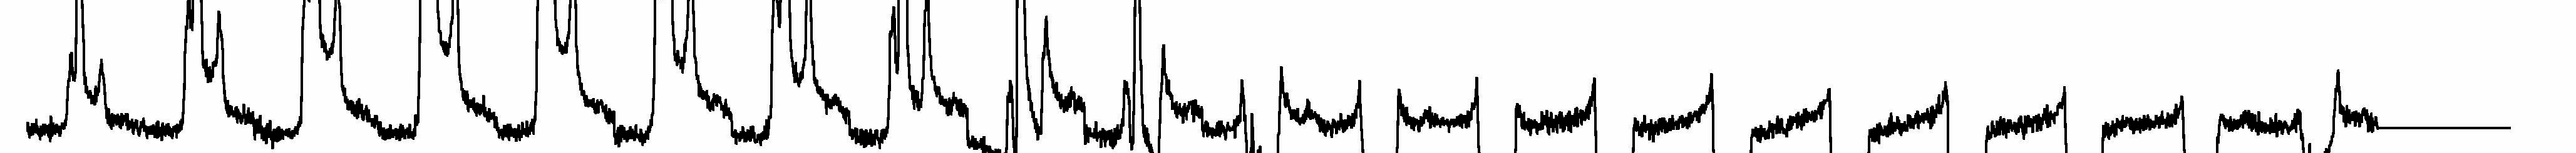 4.1.1. A spektrométer kalibrálása A 90 -os pulzus kalibrálásához kristályvizes nátrium-wolframátot (NaWO4 HO) használtam, ami egységes, kristályos állagú volt.